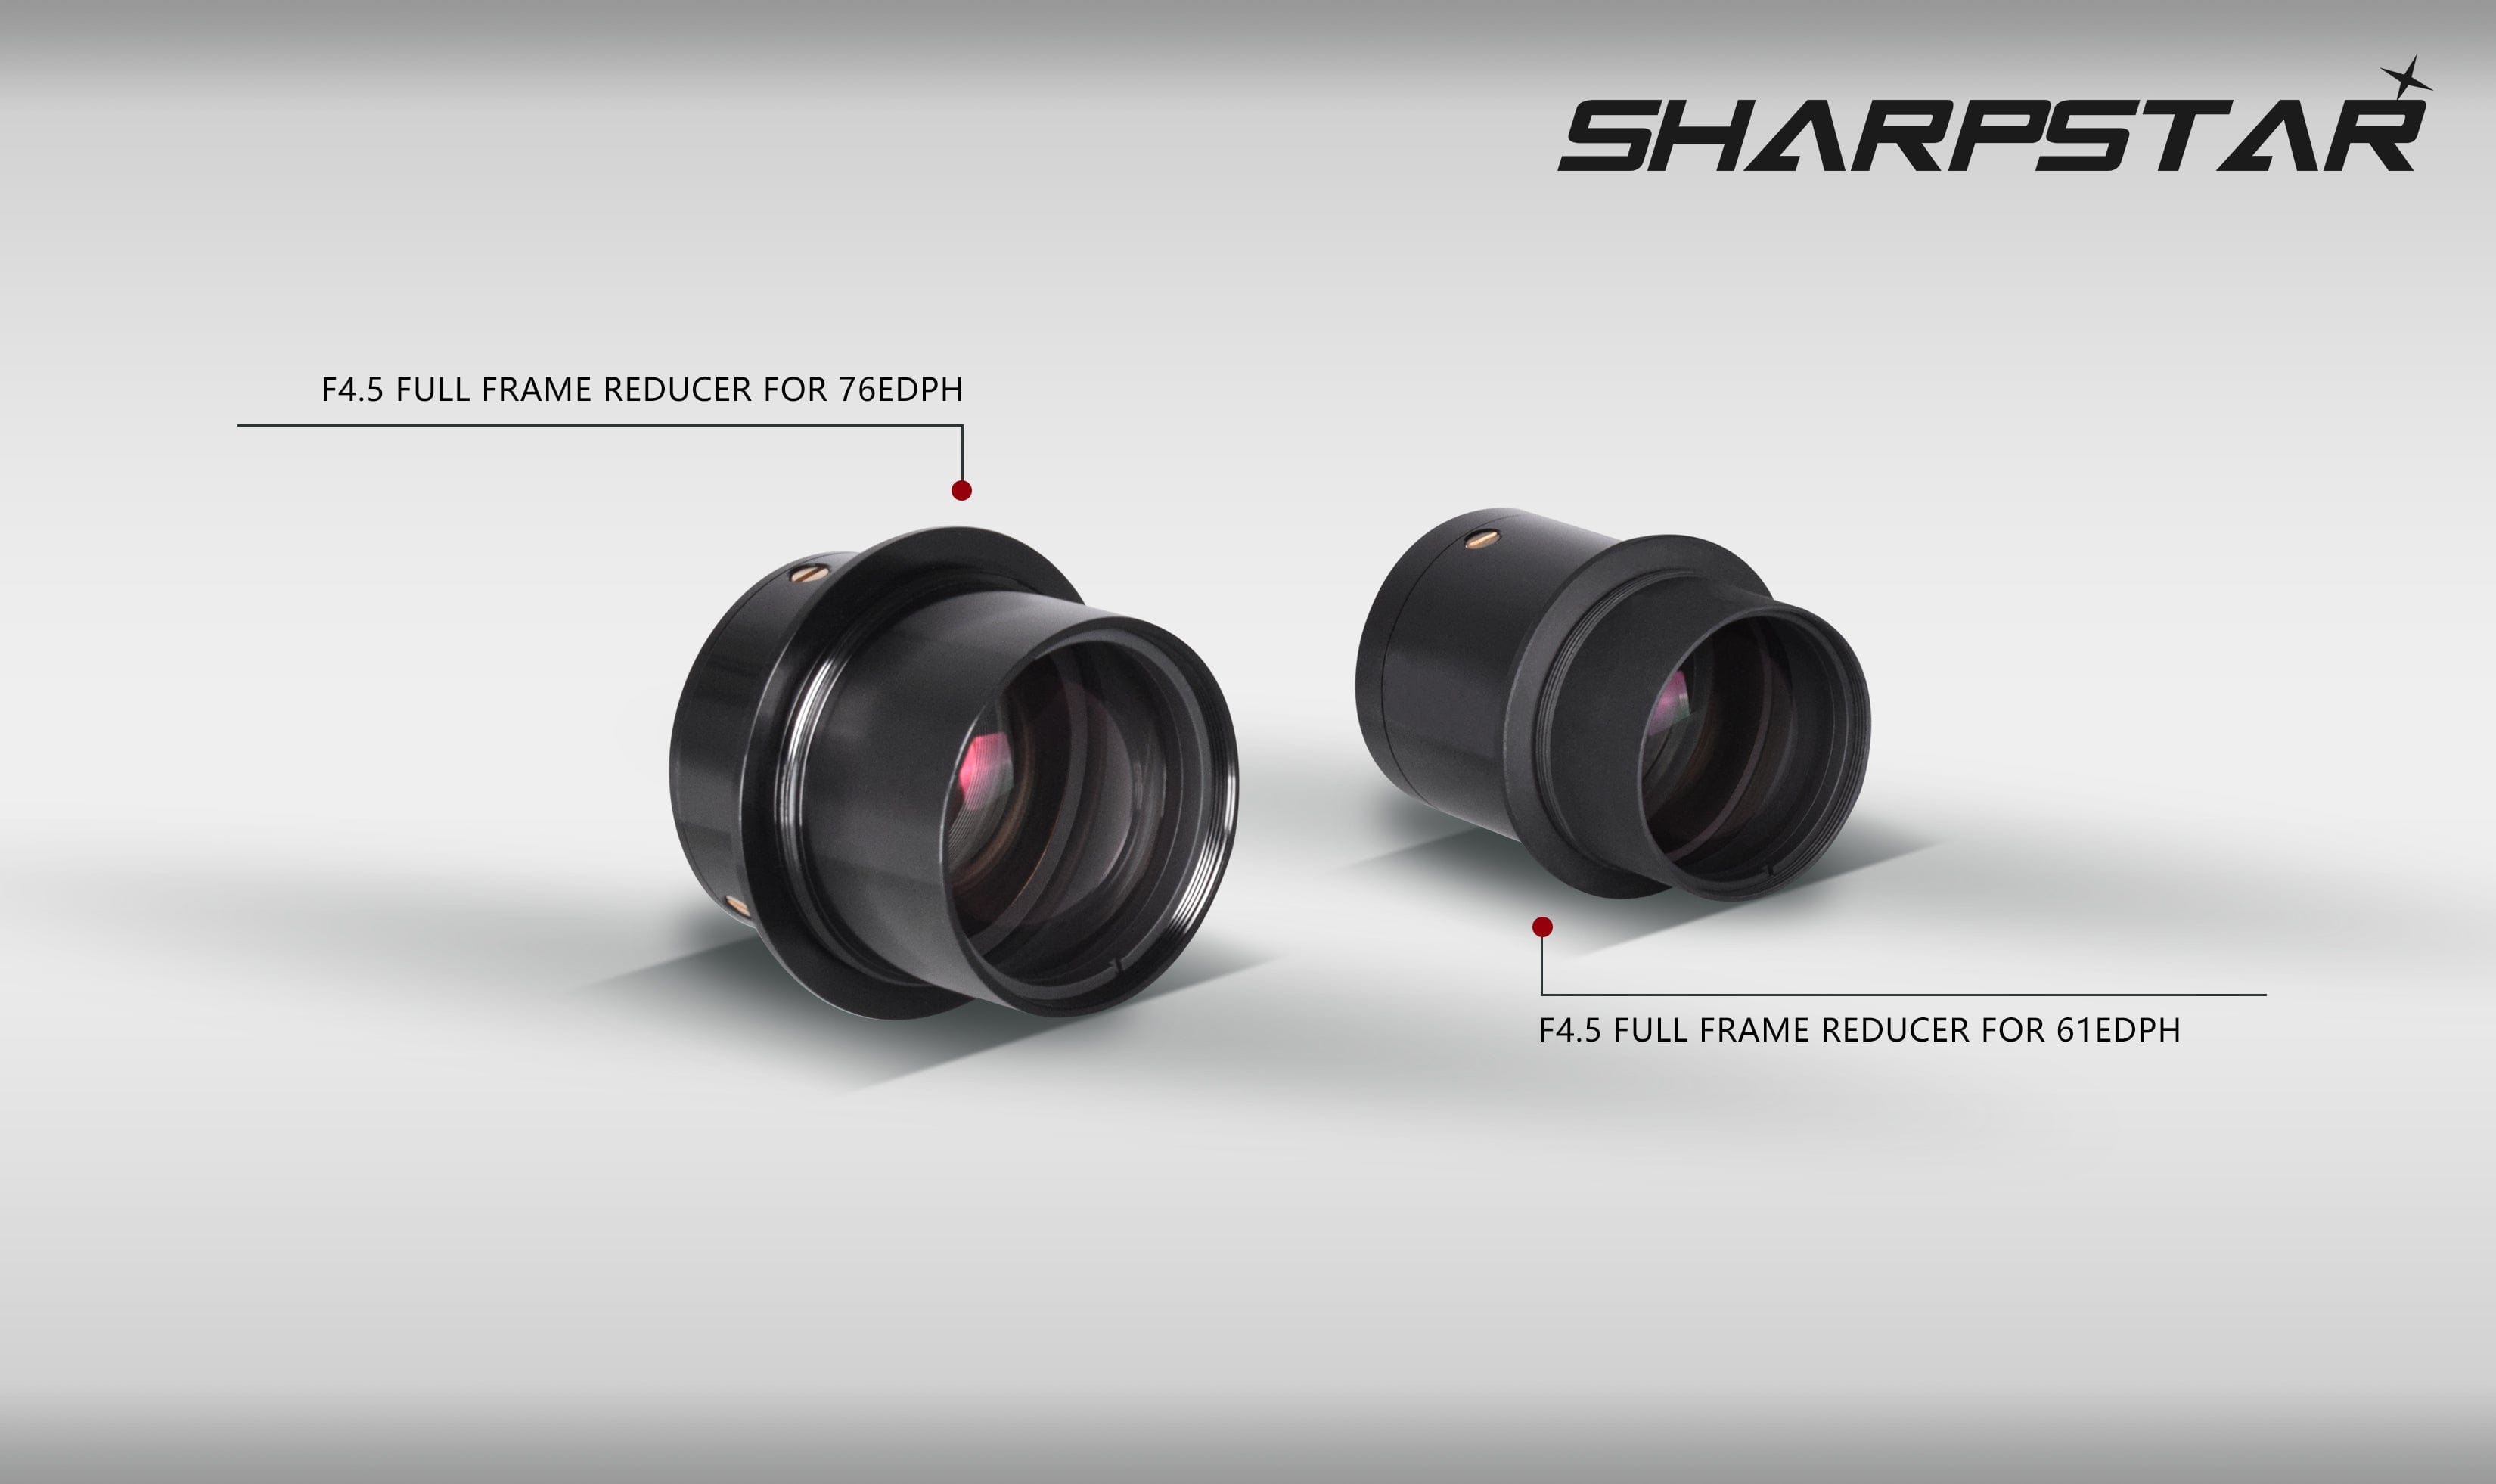 Sharpstar Optics Flattener Sharpstar Optics 0.8x Reducer and Flattener for Full Frame Cameras for the Sharpstar 76EDPH - SHRD76